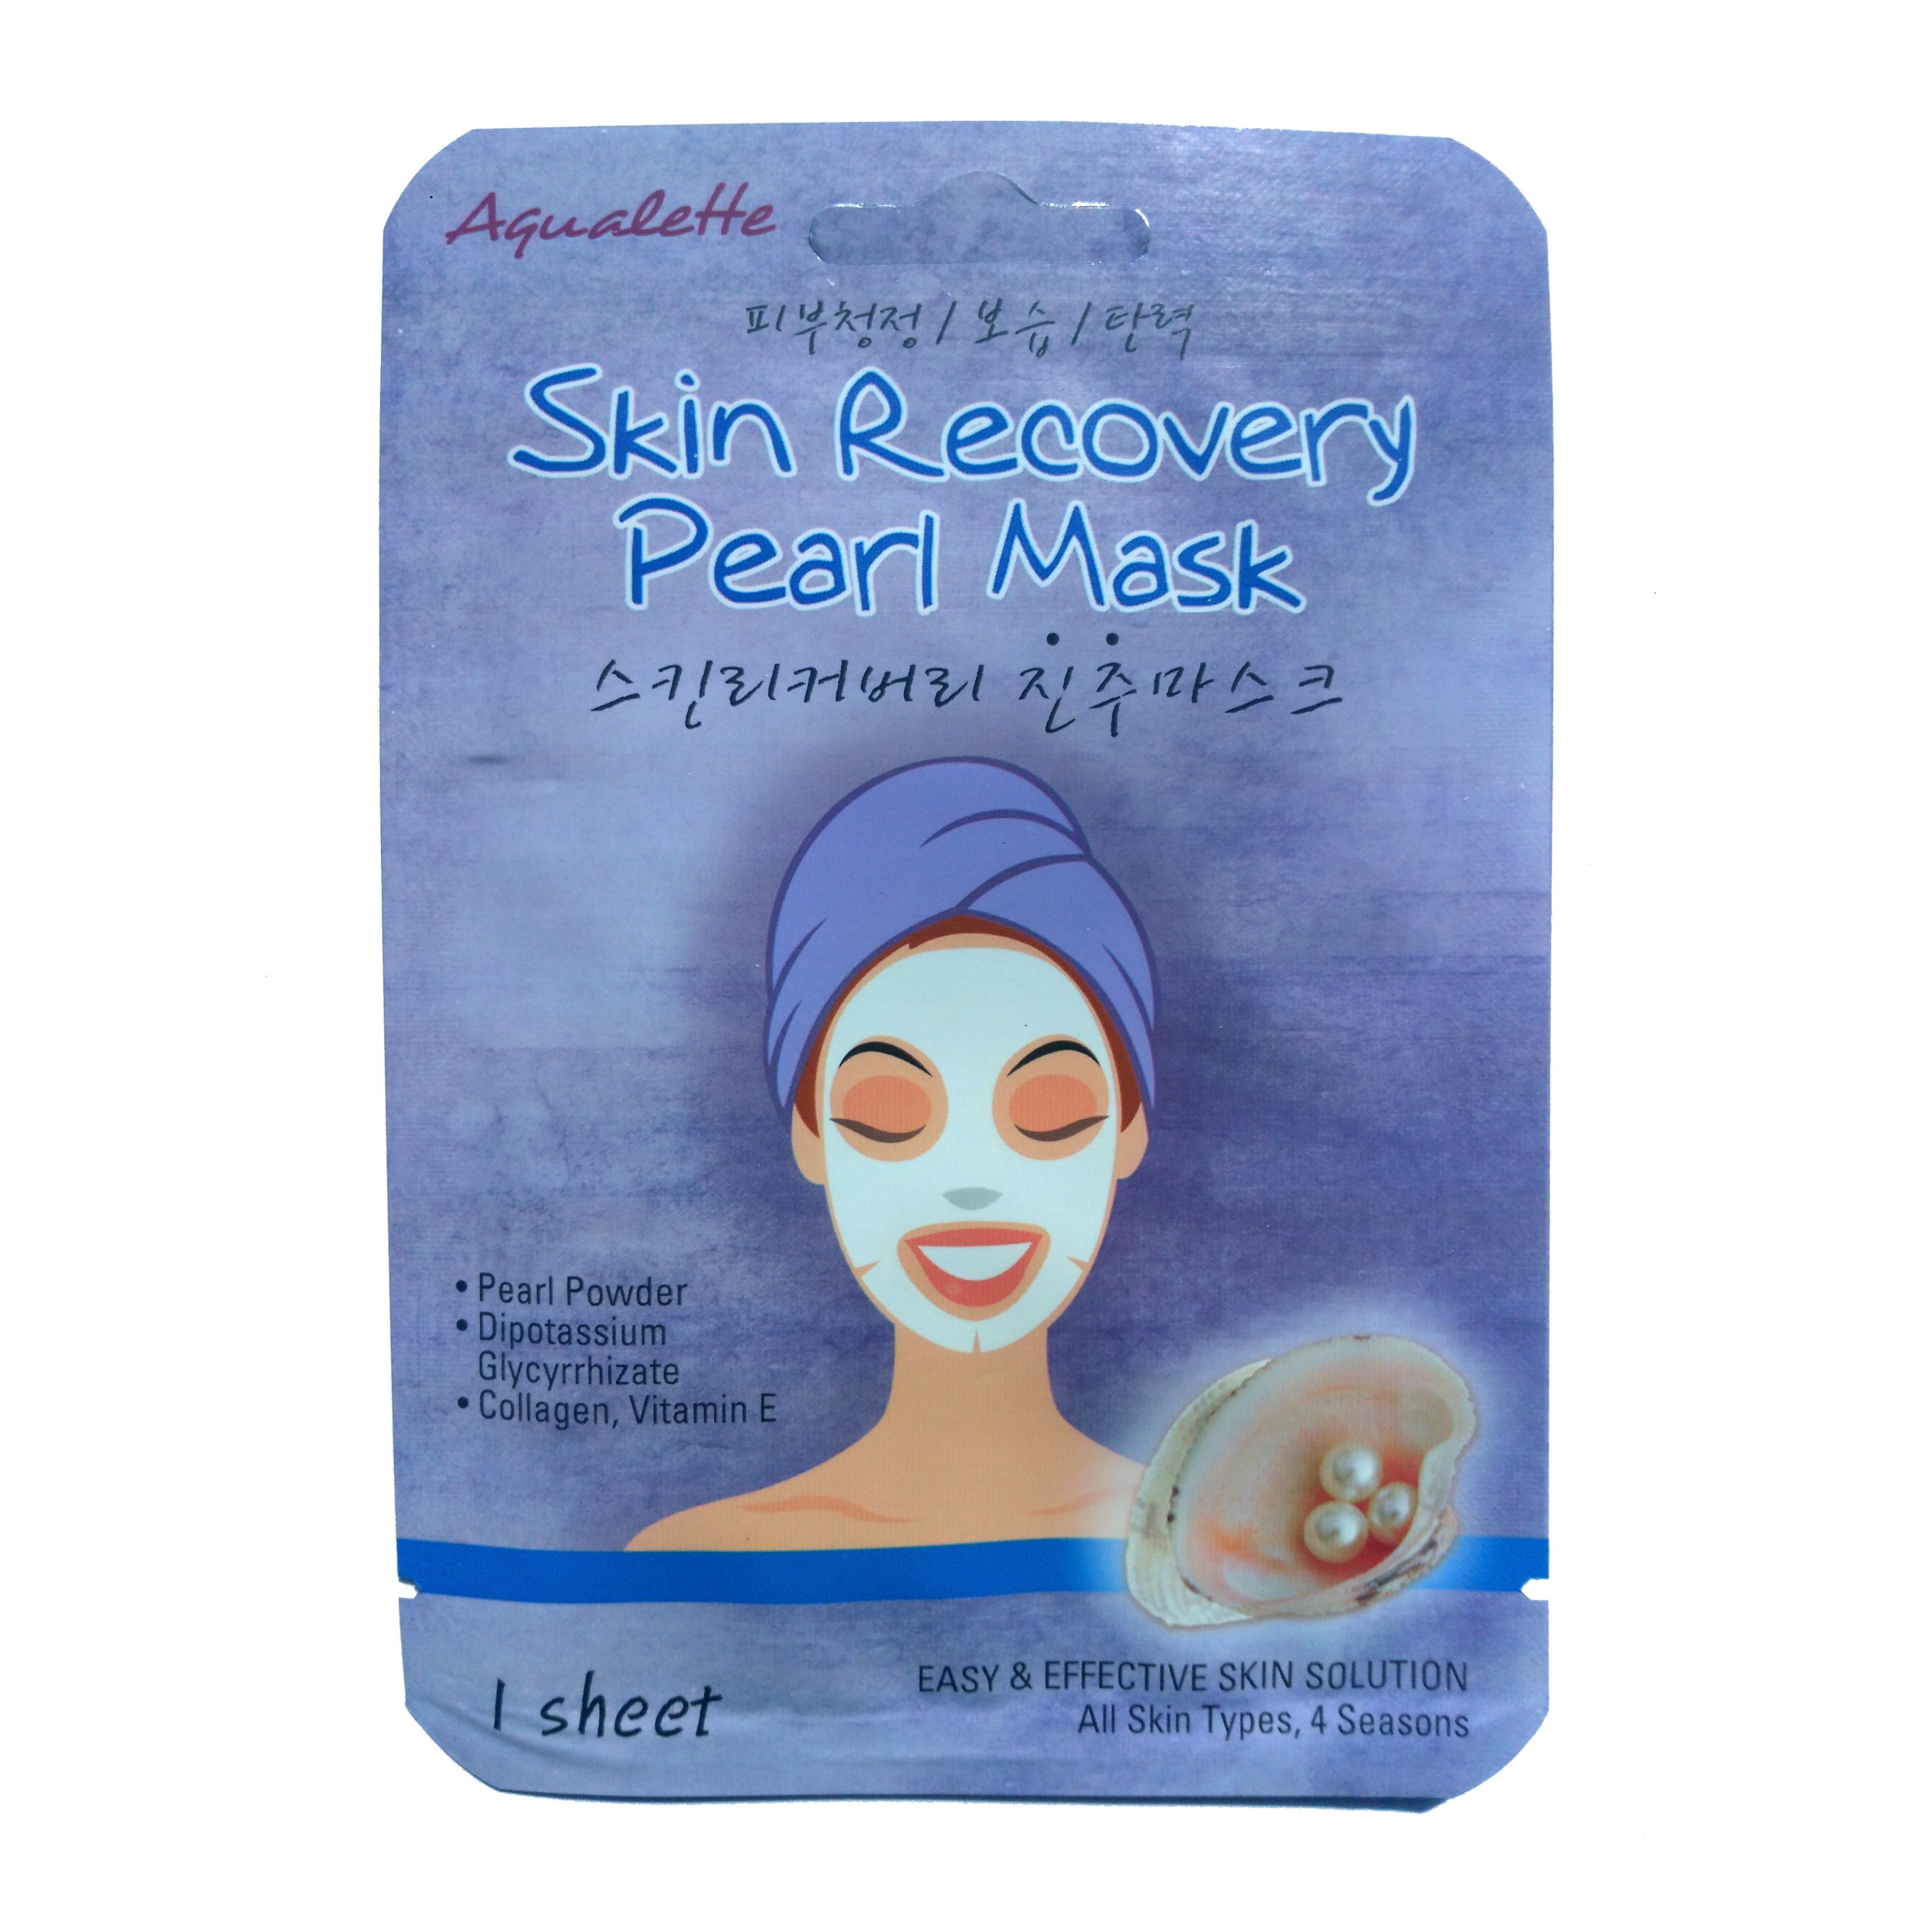 Маска жемчужная отзывы. Prreti Cleanse маска для лица восстанавливающий. Жемчужная маска для лица. Маска для лица с жемчугом. Skin Recovery маска для лица.